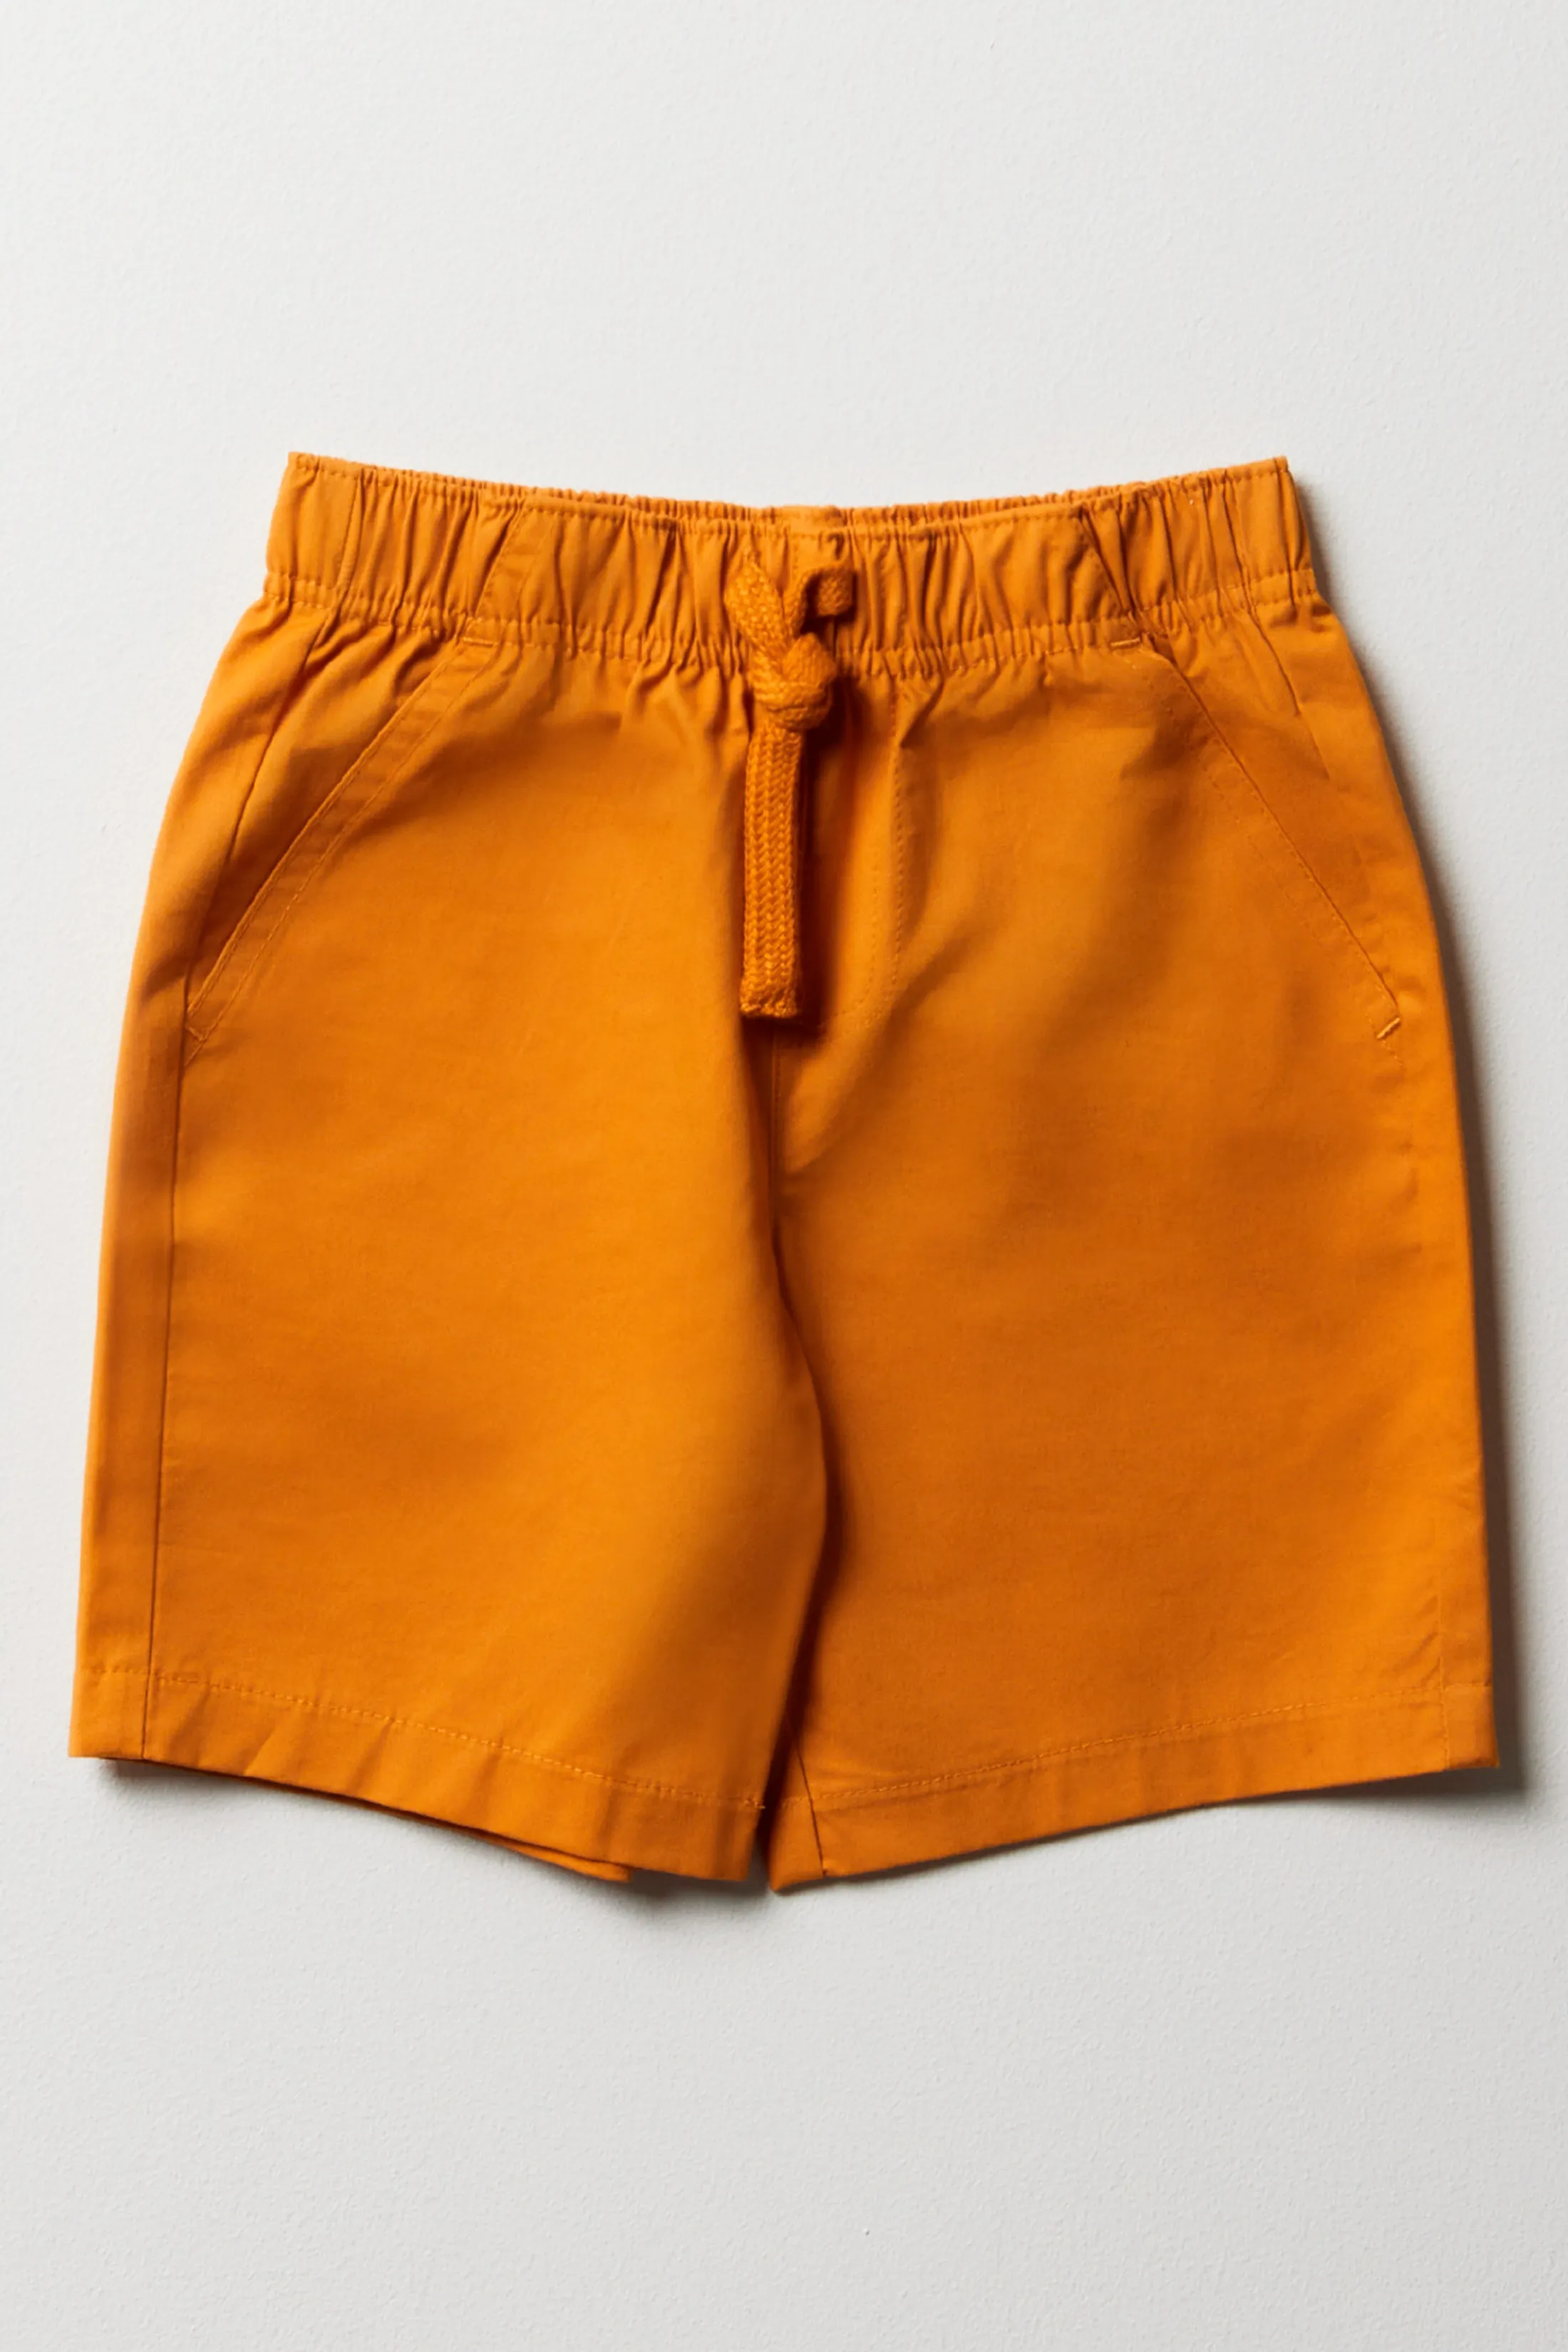 Boys Orange Shorts (4-13yrs) - Matalan